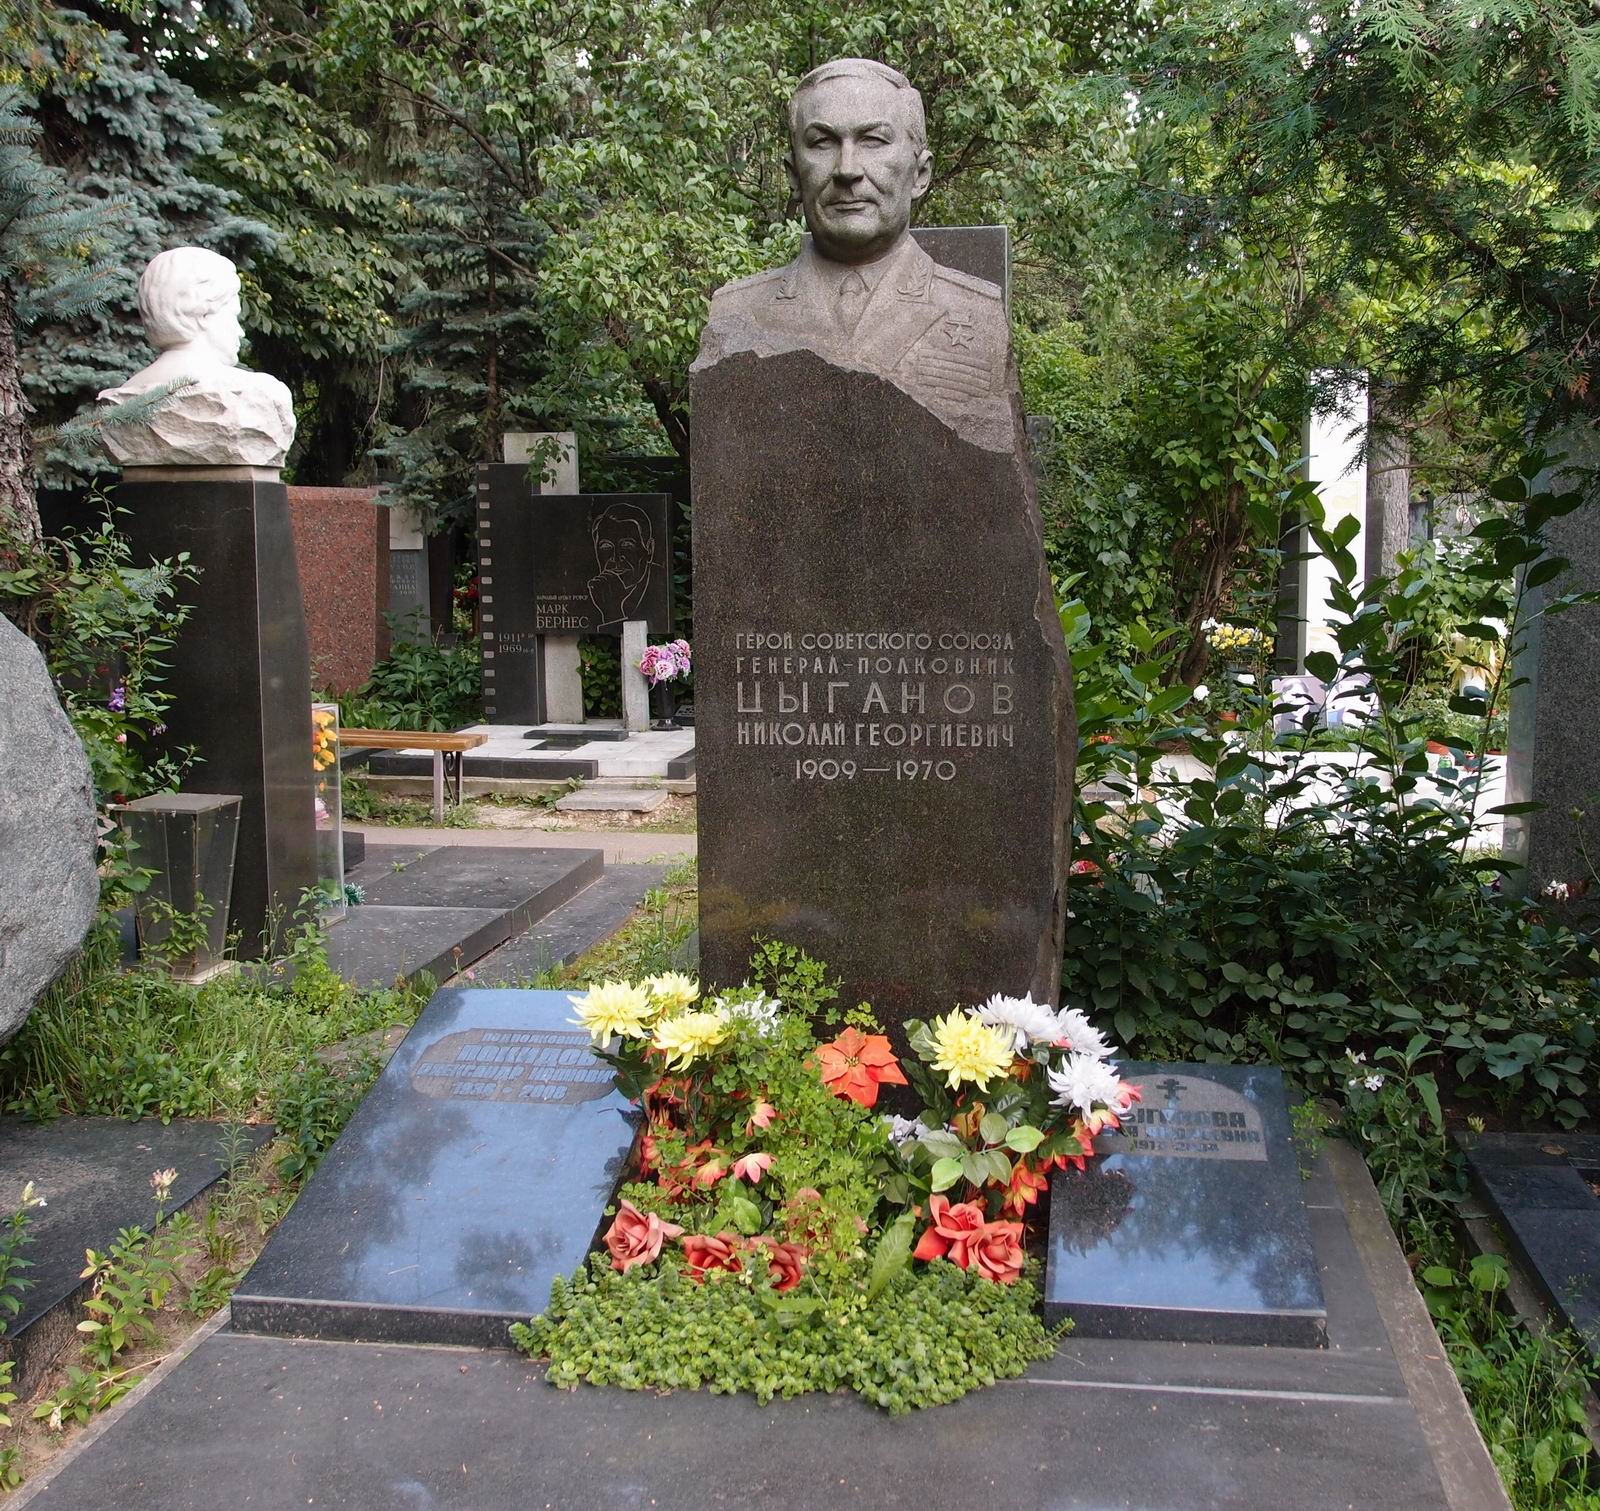 Памятник на могиле Цыганова Н.Г. (1909–1970), на Новодевичьем кладбище (7–10–10). Нажмите левую кнопку мыши чтобы увидеть фрагмент памятника.